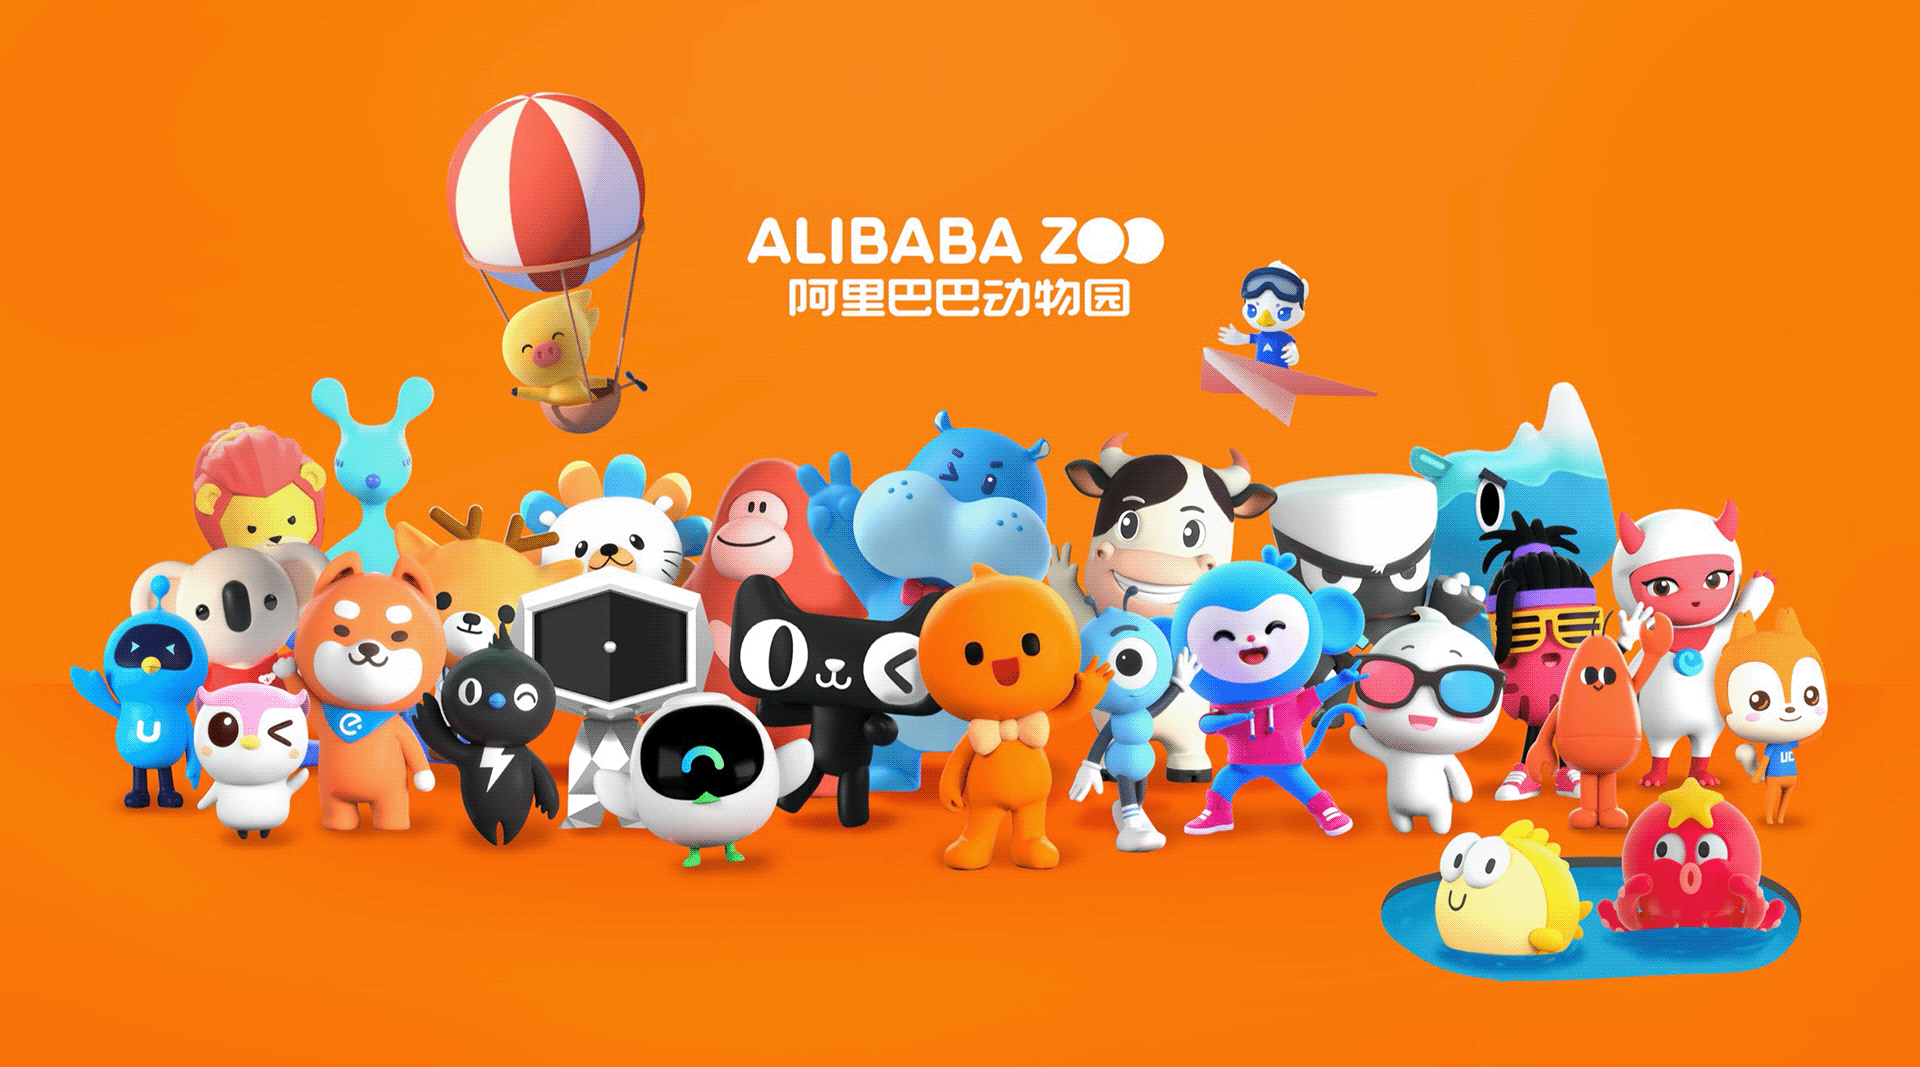 Ucan 2020: Alibaba Brand Zoo on Behance